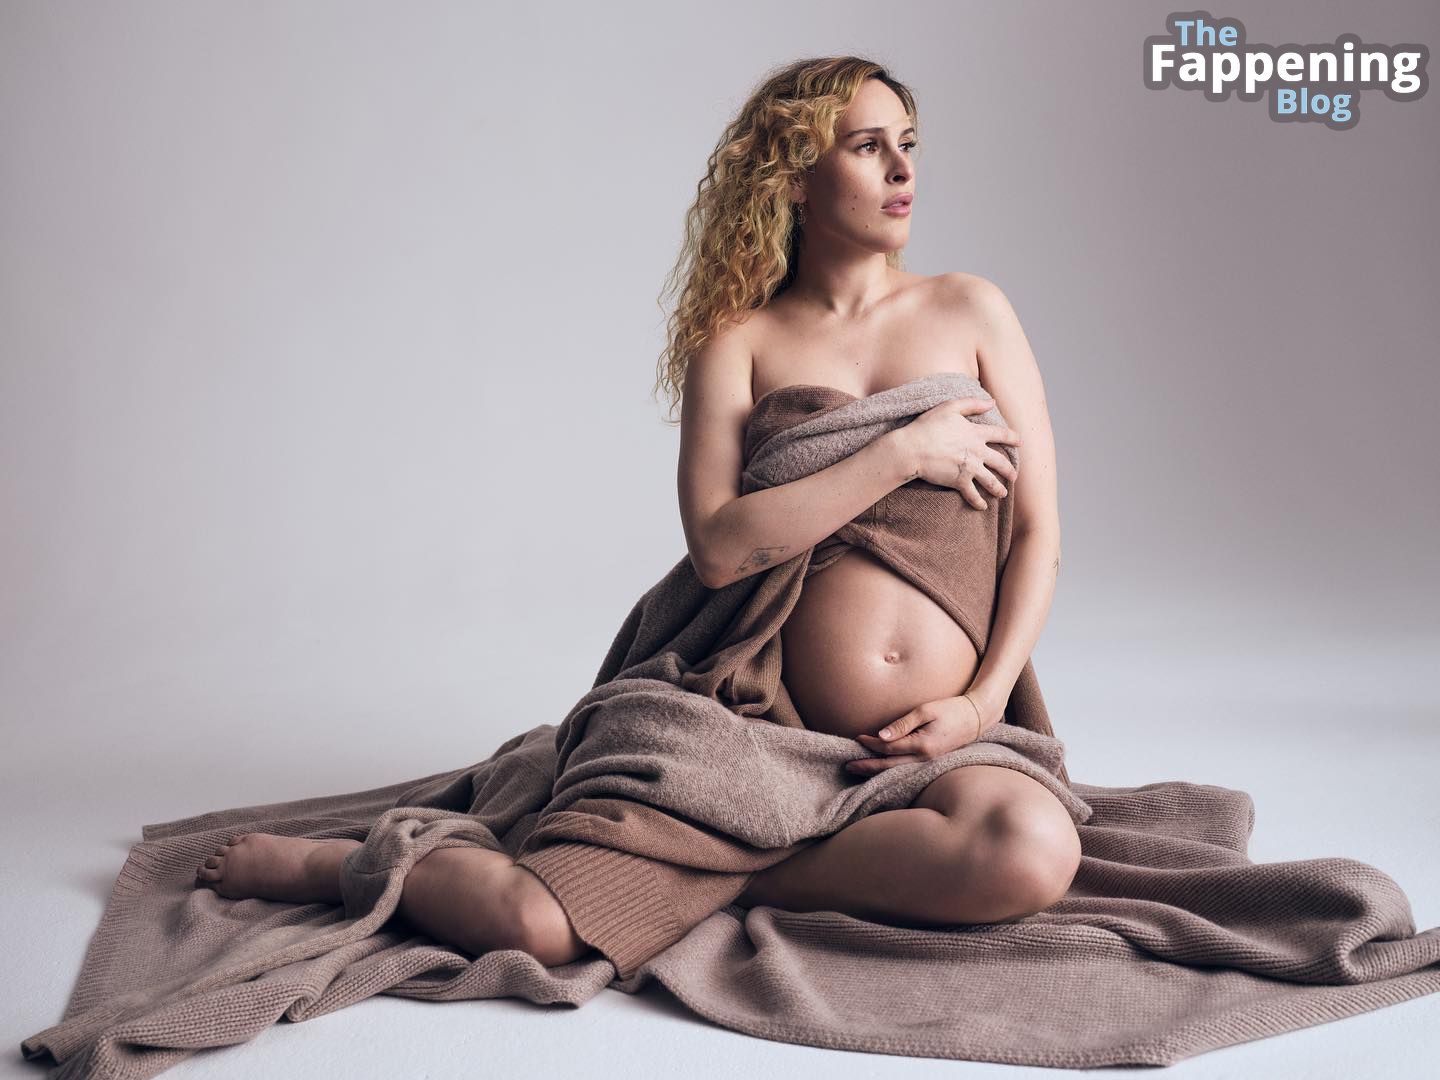 Rumer-Willis-Pregnant-The-Fappening-Blog-1.jpg